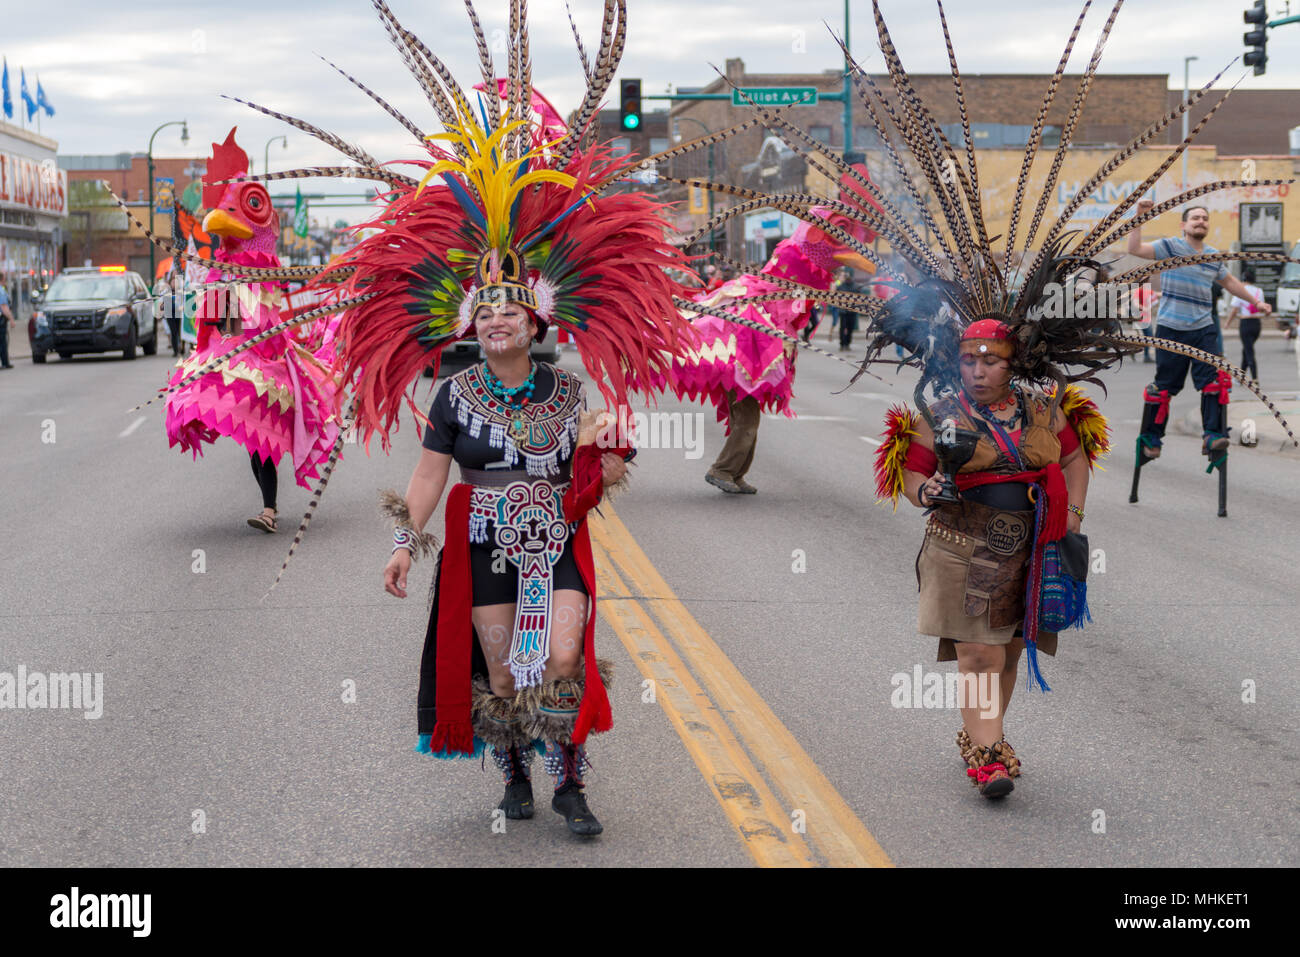 MINNEAPOLIS - 1 de mayo: la mujer en llevar vestimenta Azteca la Marcha del Día Internacional de Trabajadores, acogido por un número de organizaciones comunitarias y sindicatos. Crédito: Nicholas Neufeld/Alamy Live News Foto de stock